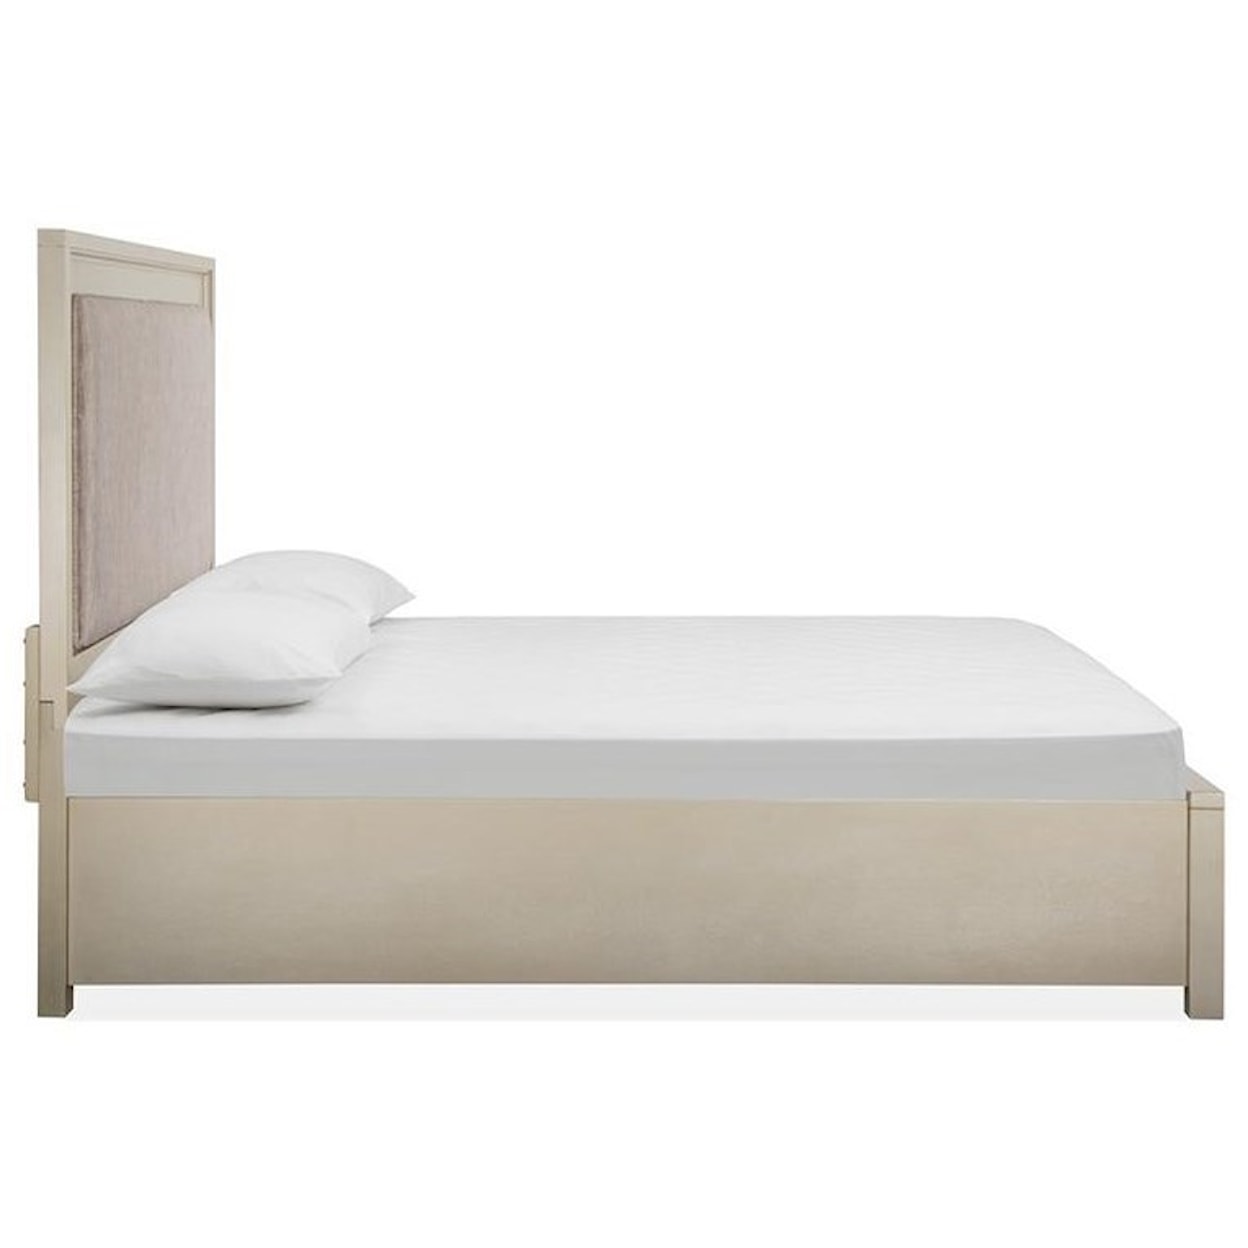 Magnussen Home Chantelle Bedroom Queen Panel Bed